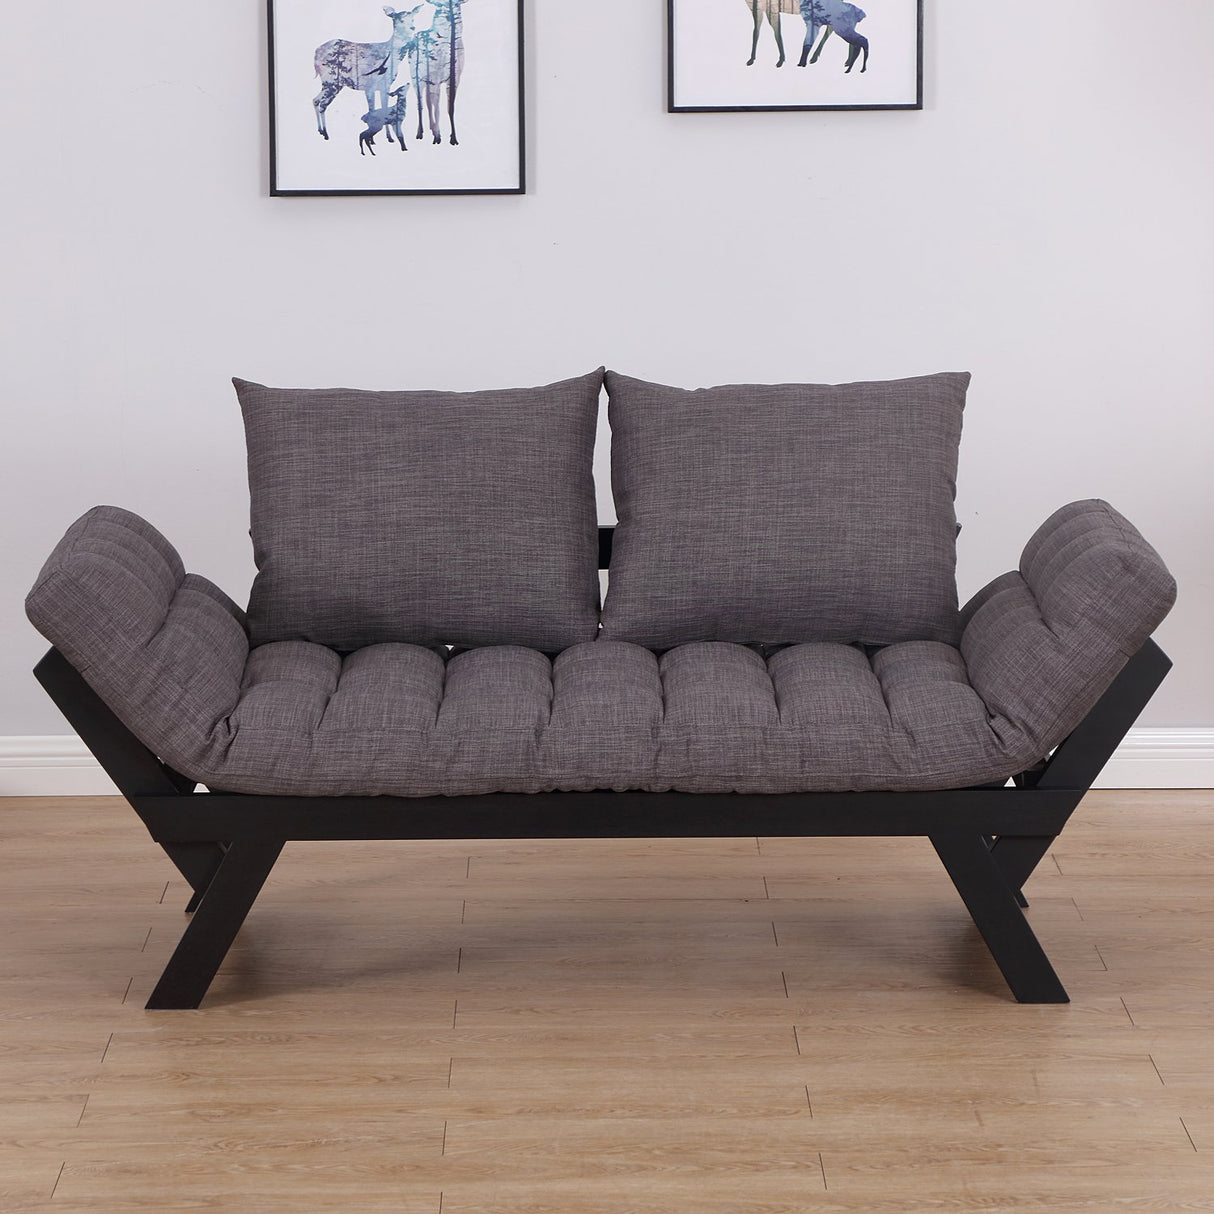 immagine-3-easycomfort-easycomfort-divano-letto-2-posti-con-3-posizioni-regolabili-nero-e-grigio-in-lino-e-rovere-elegante-ean-8055776915333